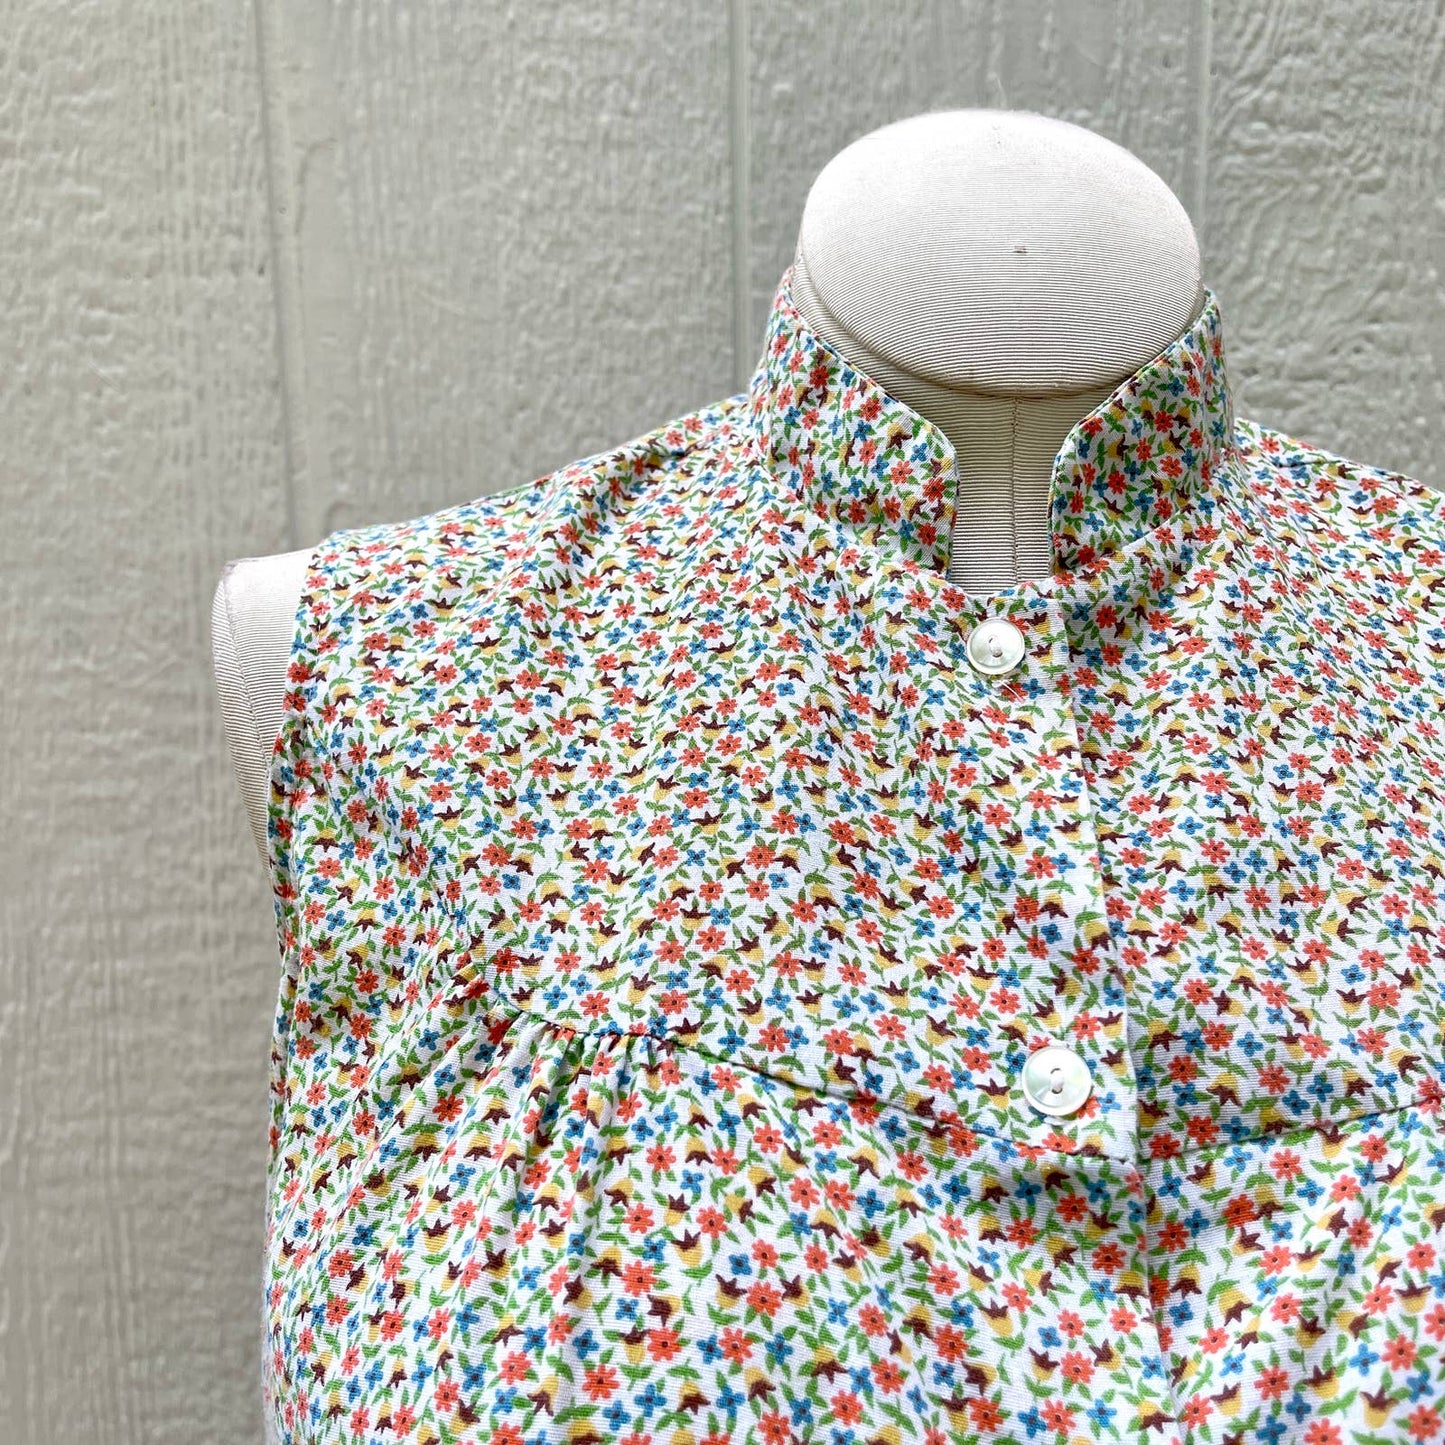 Vintage 70s Floral Cotton Sleeveless Blouse Button Up Top Orange Hippie Size M L